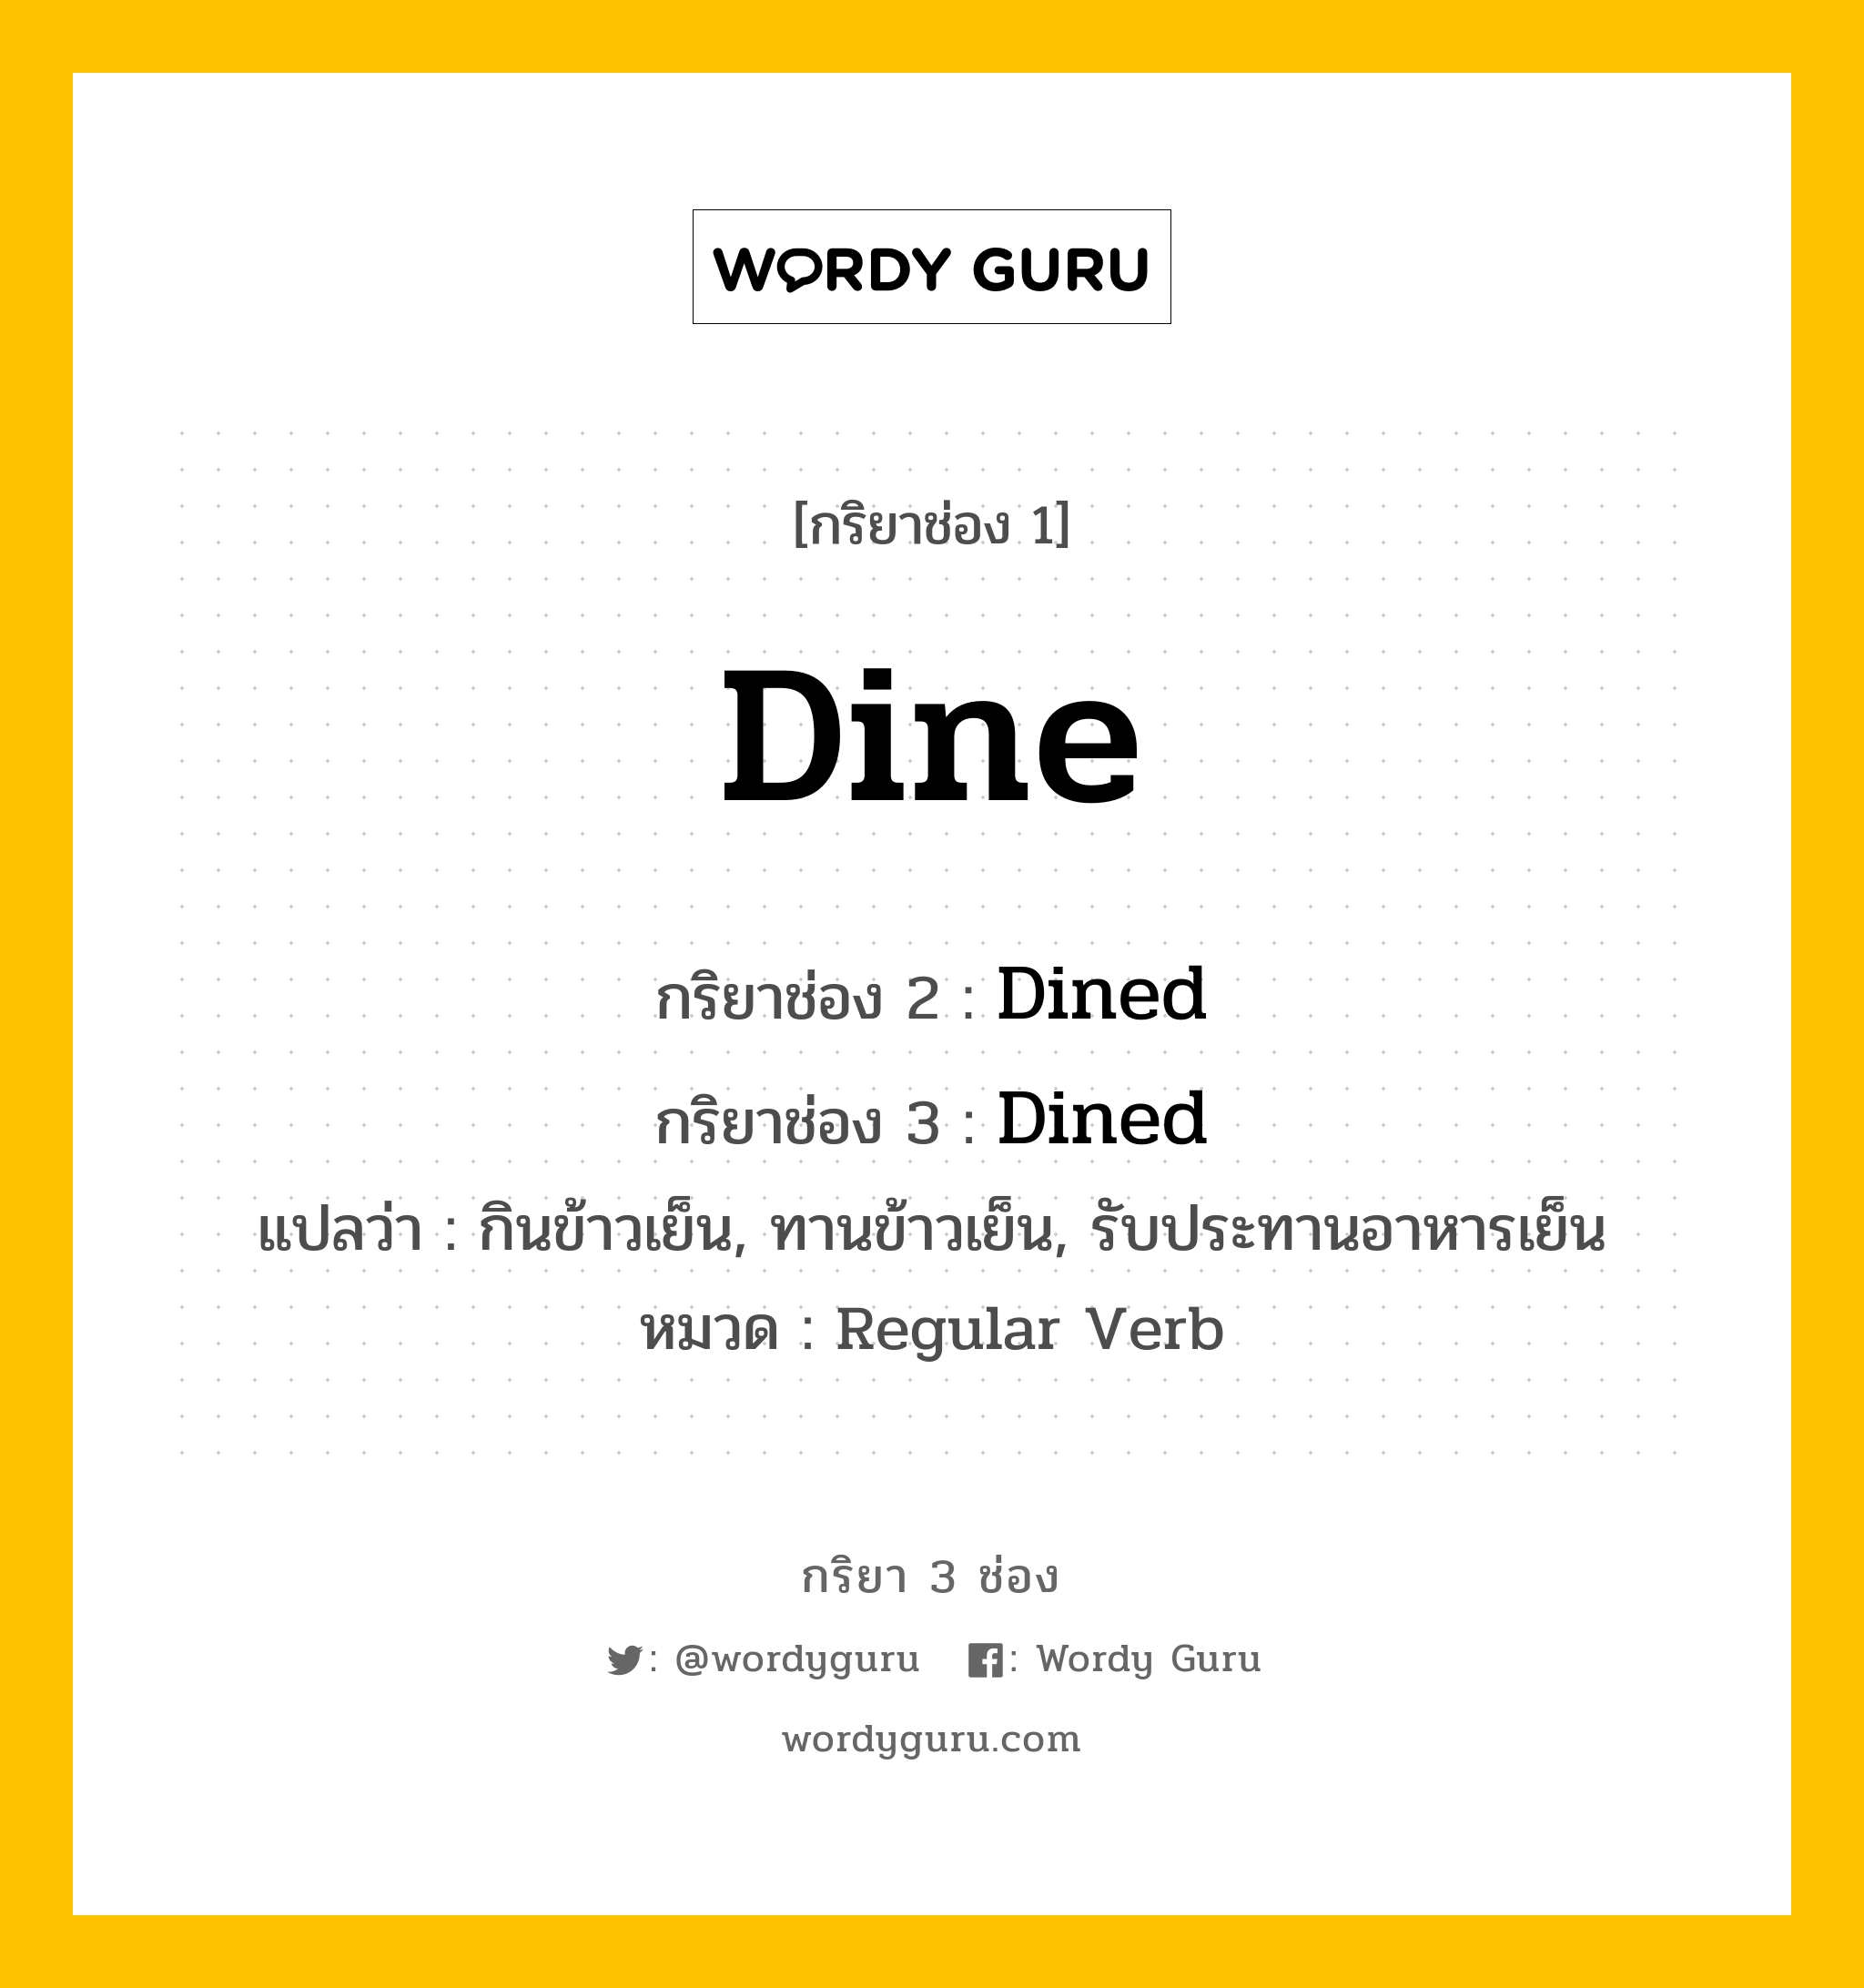 กริยา 3 ช่อง ของ Dine คืออะไร? มาดูคำอ่าน คำแปลกันเลย, กริยาช่อง 1 Dine กริยาช่อง 2 Dined กริยาช่อง 3 Dined แปลว่า กินข้าวเย็น, ทานข้าวเย็น, รับประทานอาหารเย็น หมวด Regular Verb หมวด Regular Verb